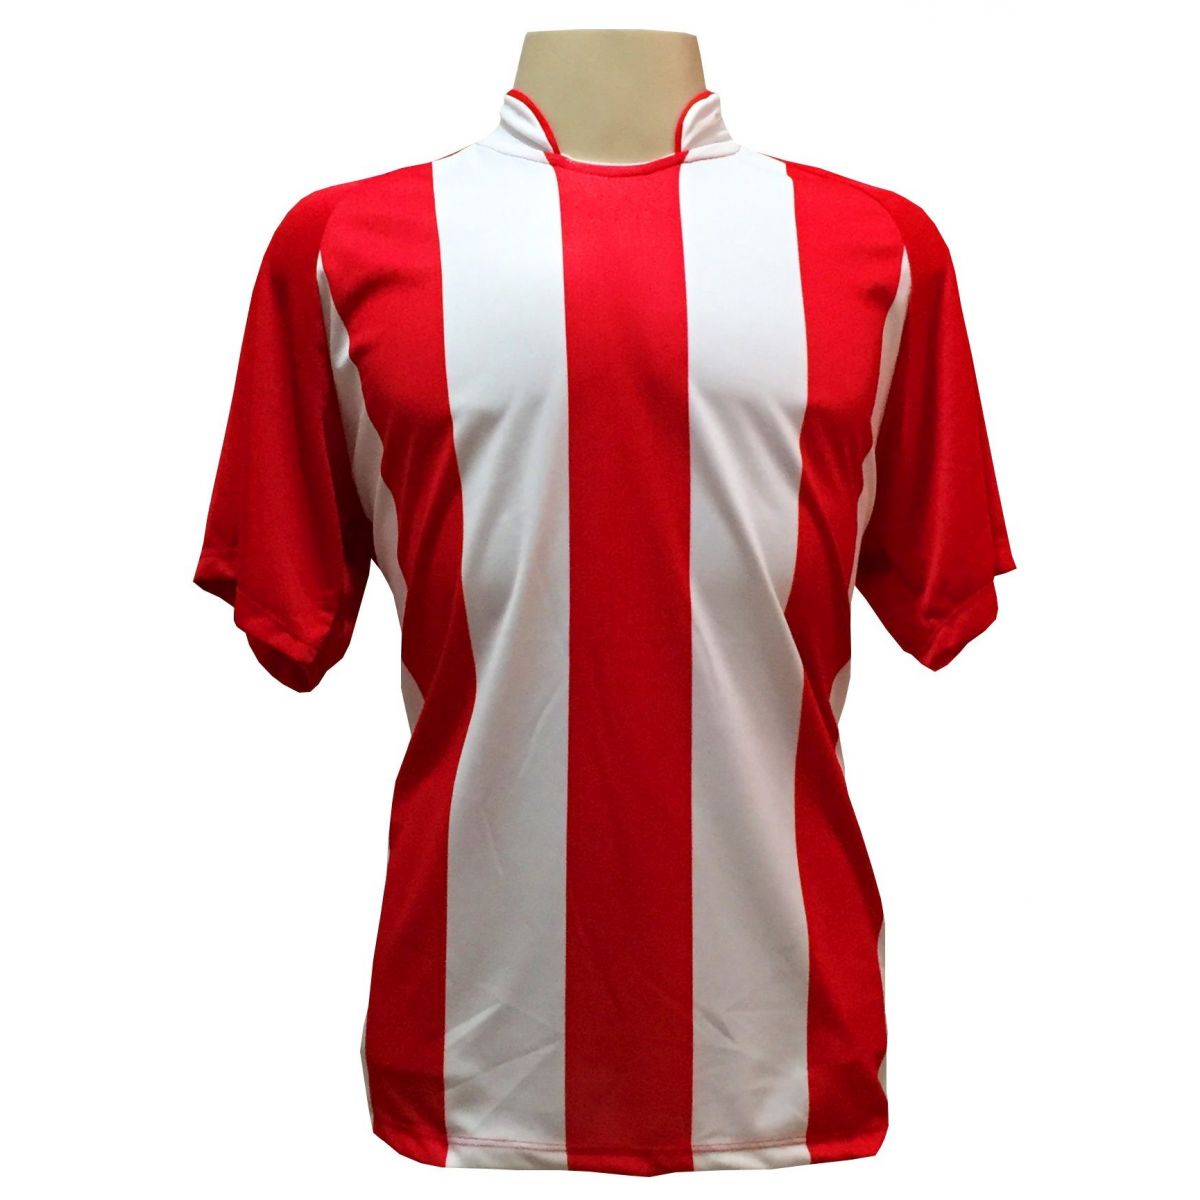 Uniforme Esportivo com 12 camisas modelo Milan Vermelho/Branco + 12 calções modelo Copa + 1 Goleiro + Brindes